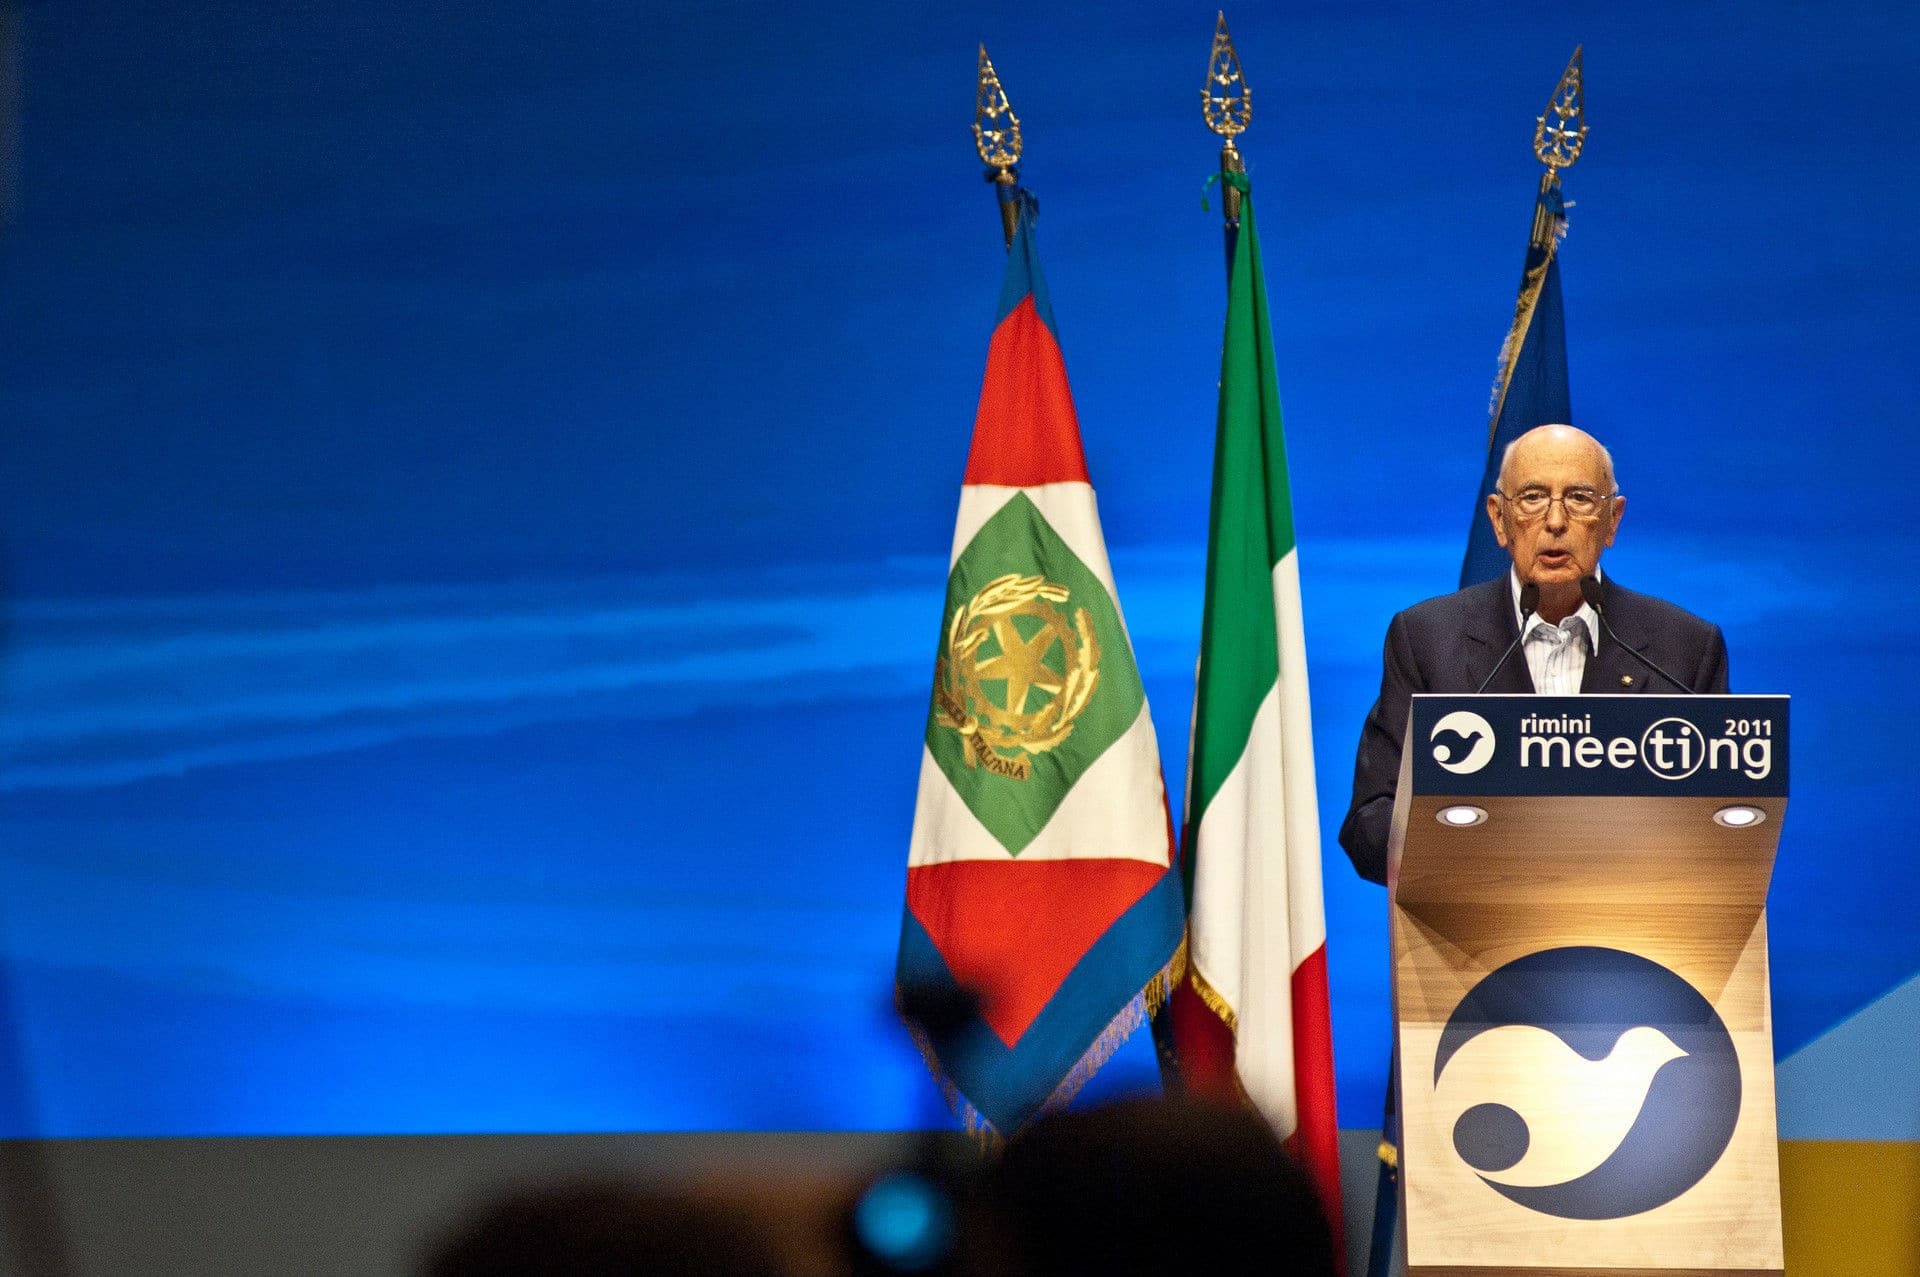 Featured image for “Giorgio Napolitano e i suoi interventi al Meeting”